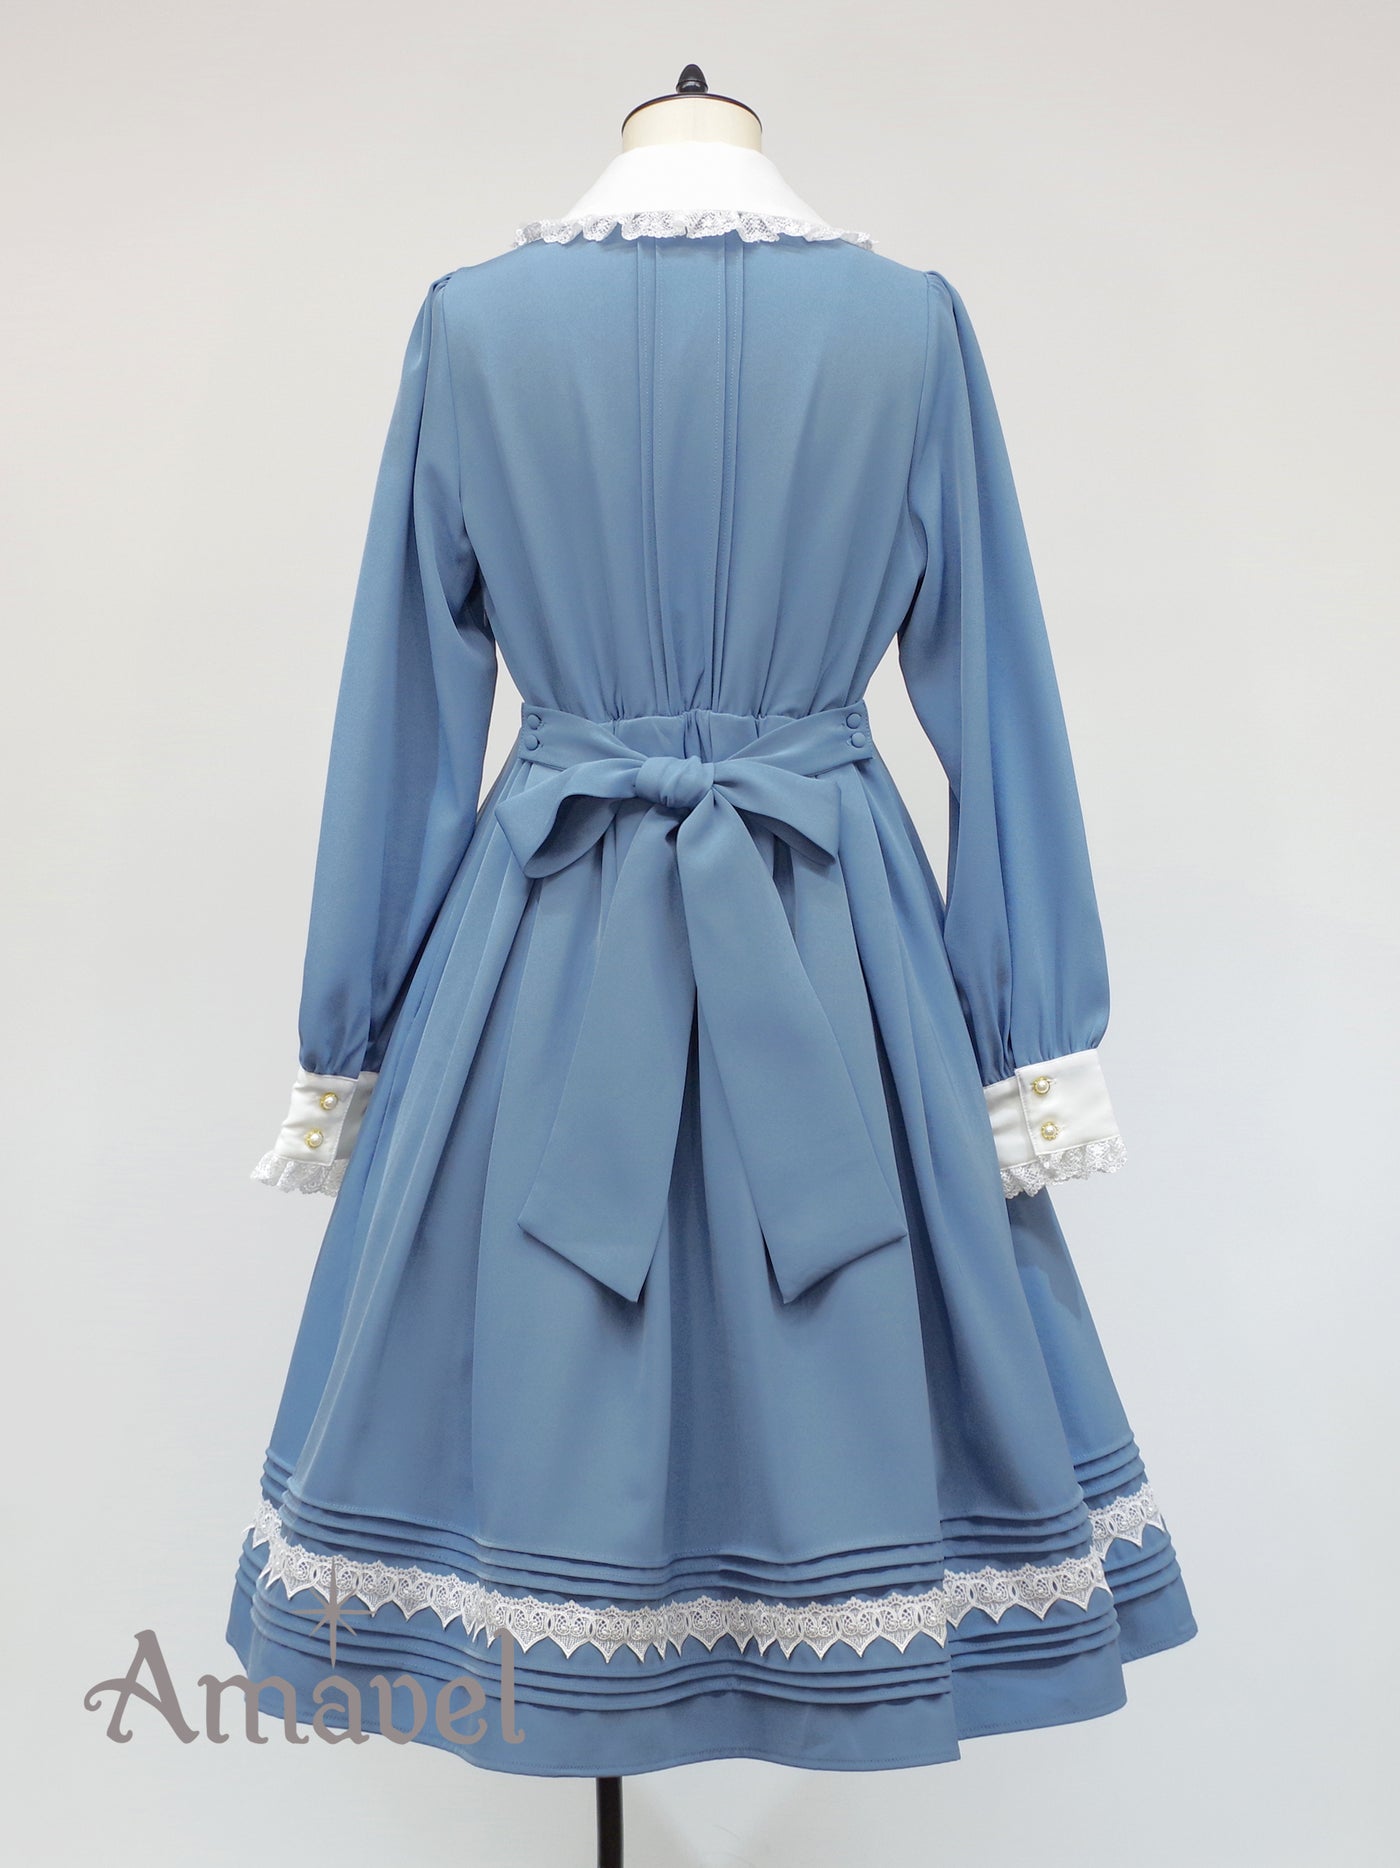 Antique Heart Lace dress